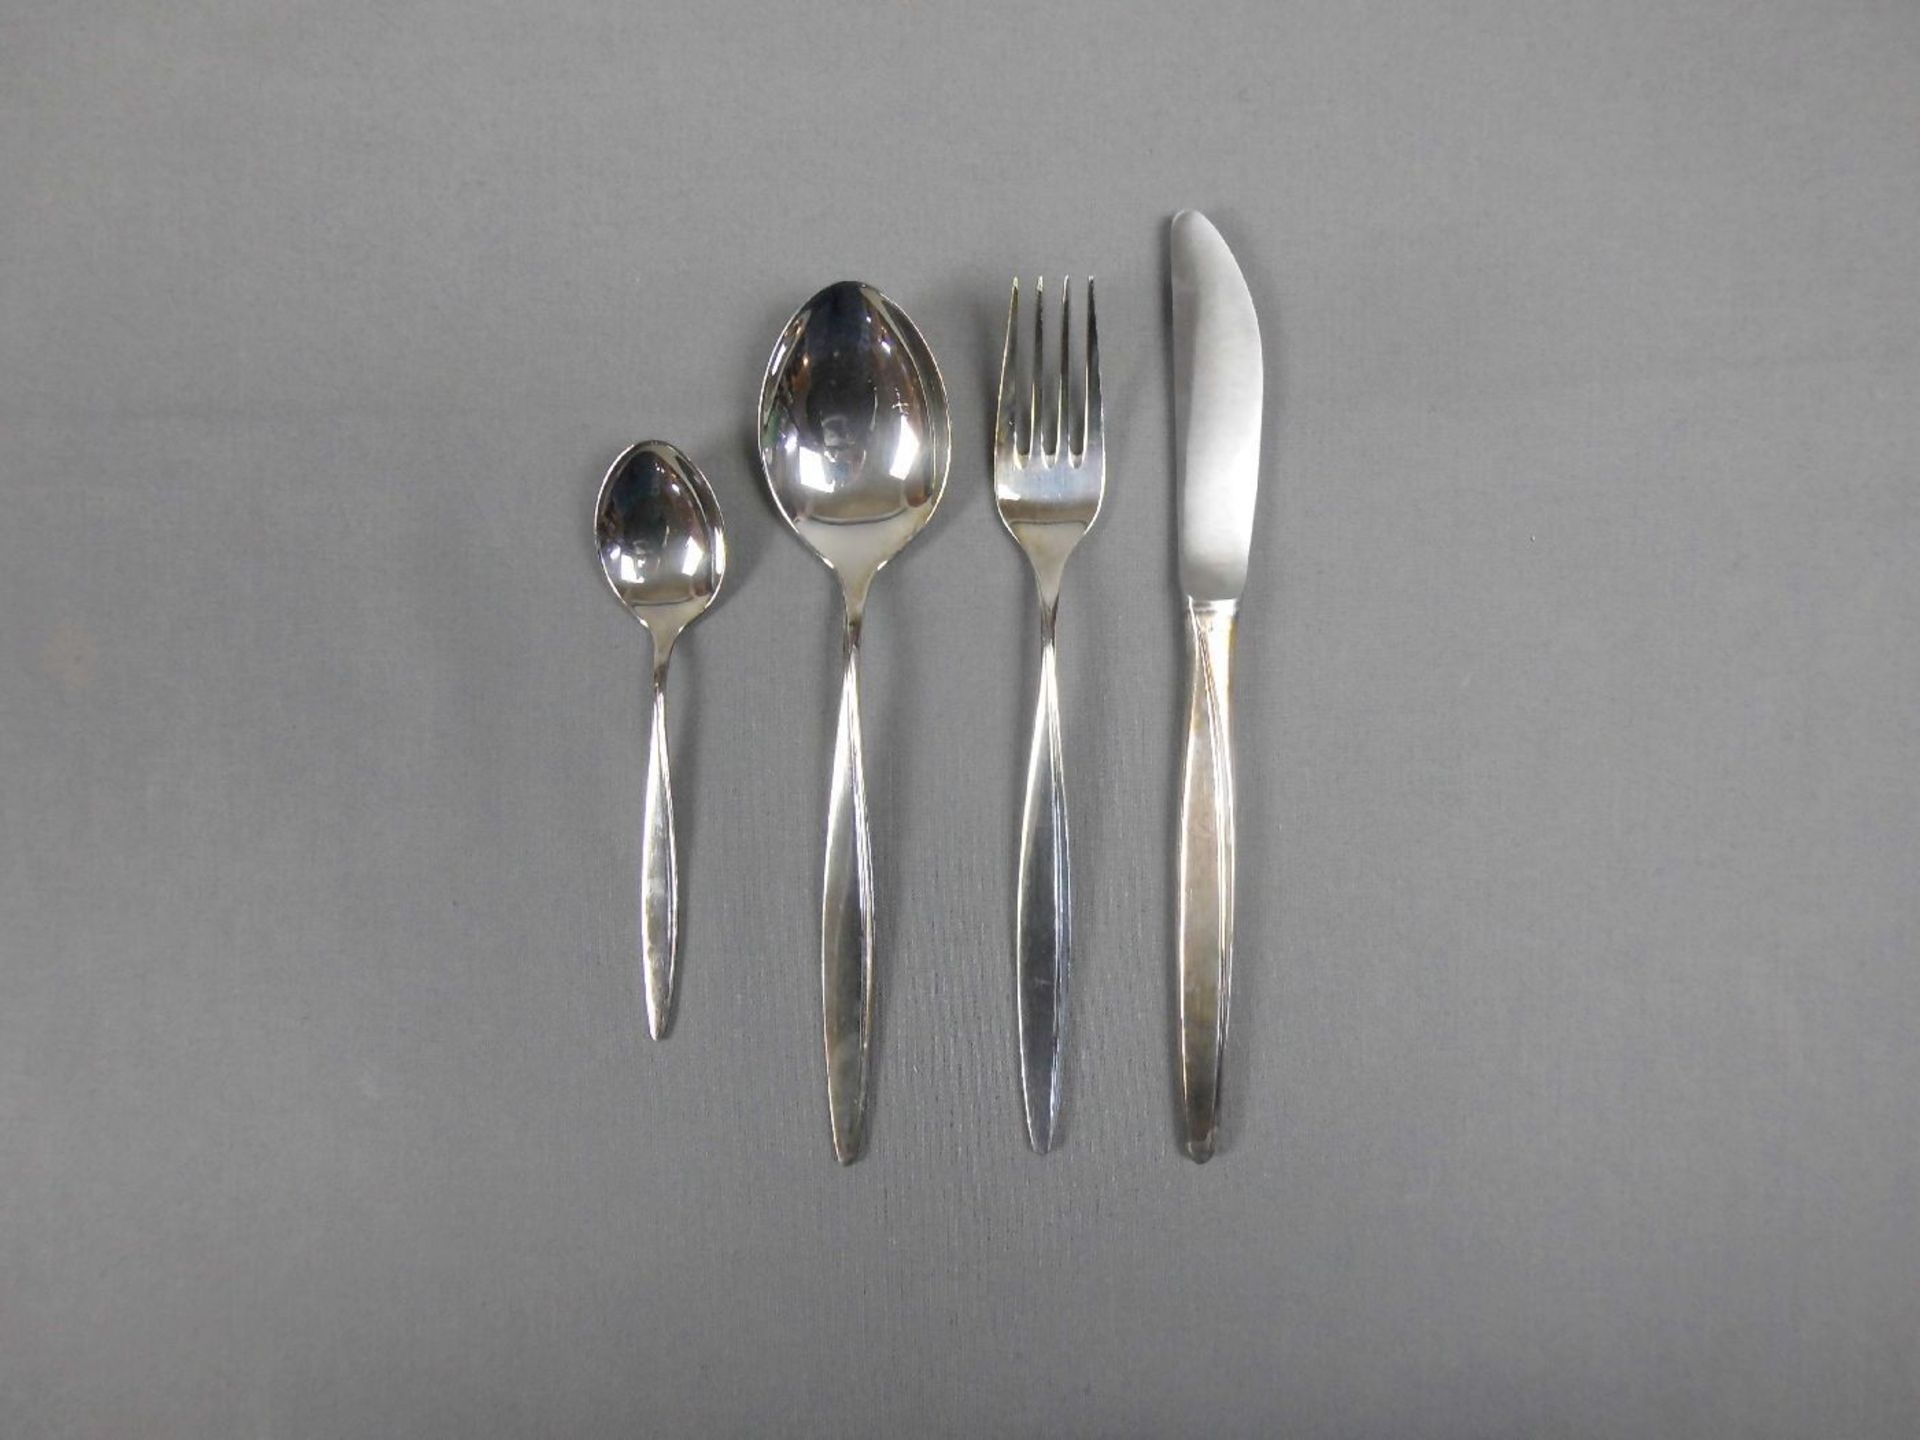 SPEISE - BESTECK / cutlery, WMF, 800er Silber (Gewicht ohne Messer: 1173 g, mit Messer: 1481 g). - Image 3 of 4